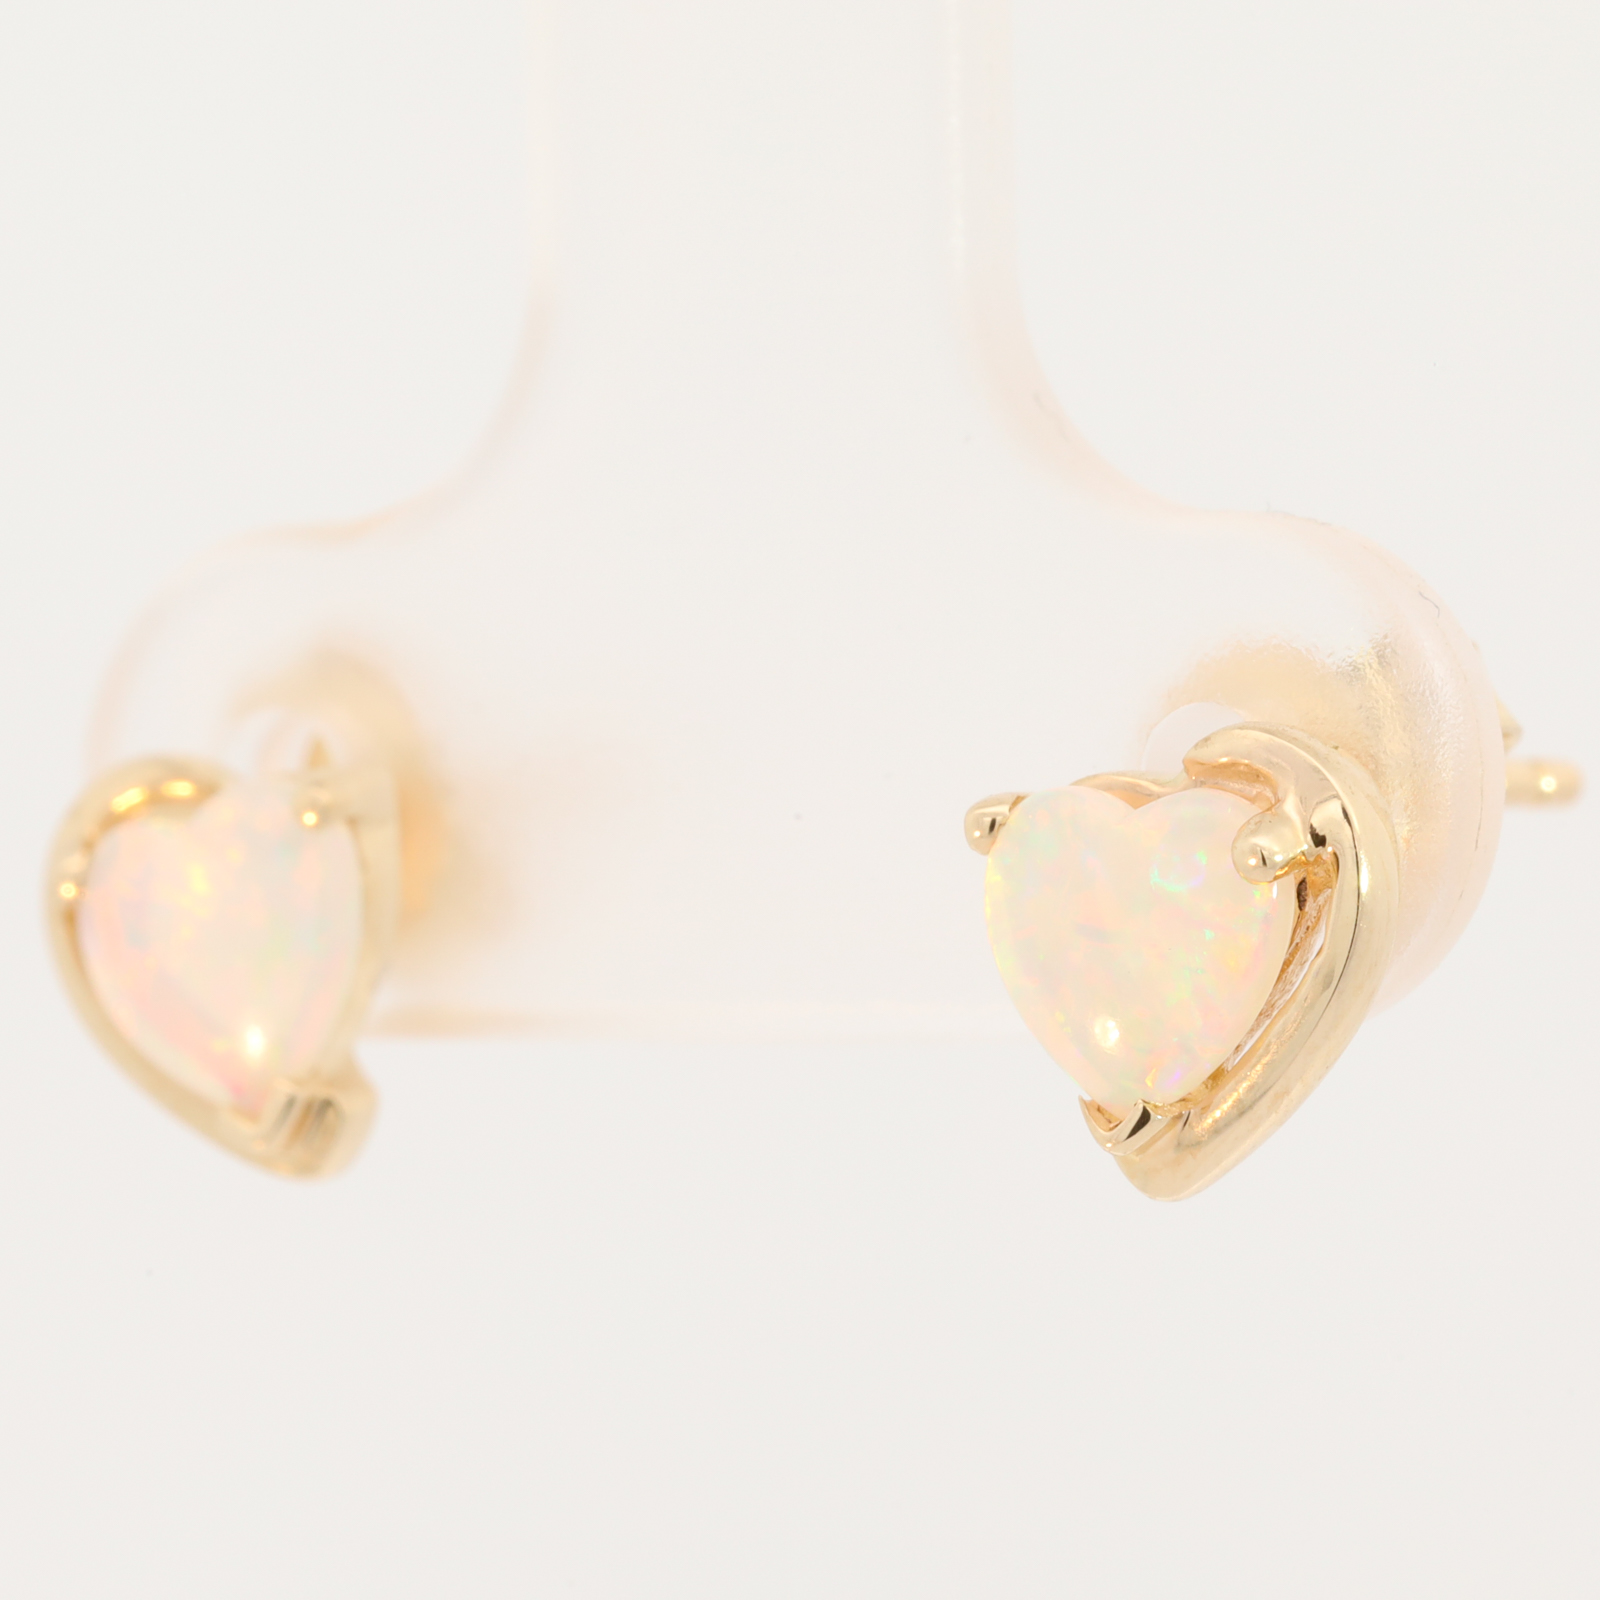 Blue Green Pink Yellow Gold Solid Australian Crystal Opal Love Heart Stud Earrings